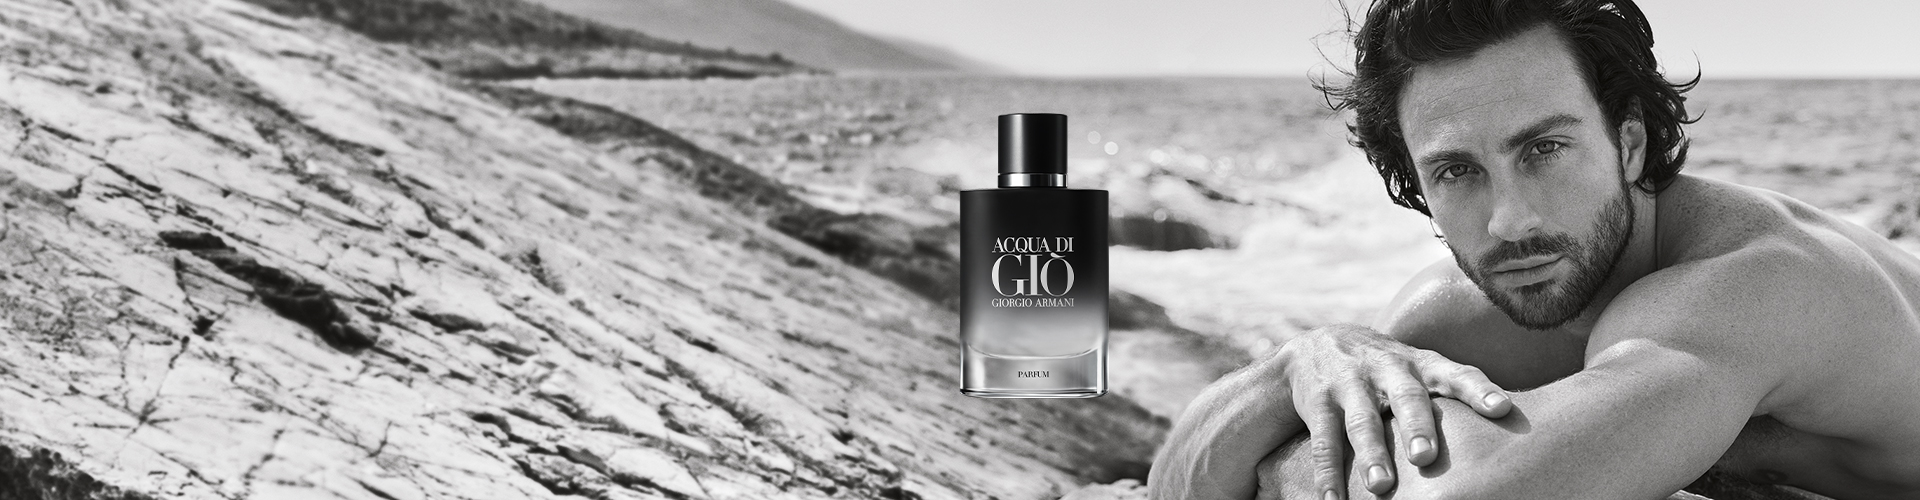 Armani Acqua Di Gio Parfum - the new fragrance for him